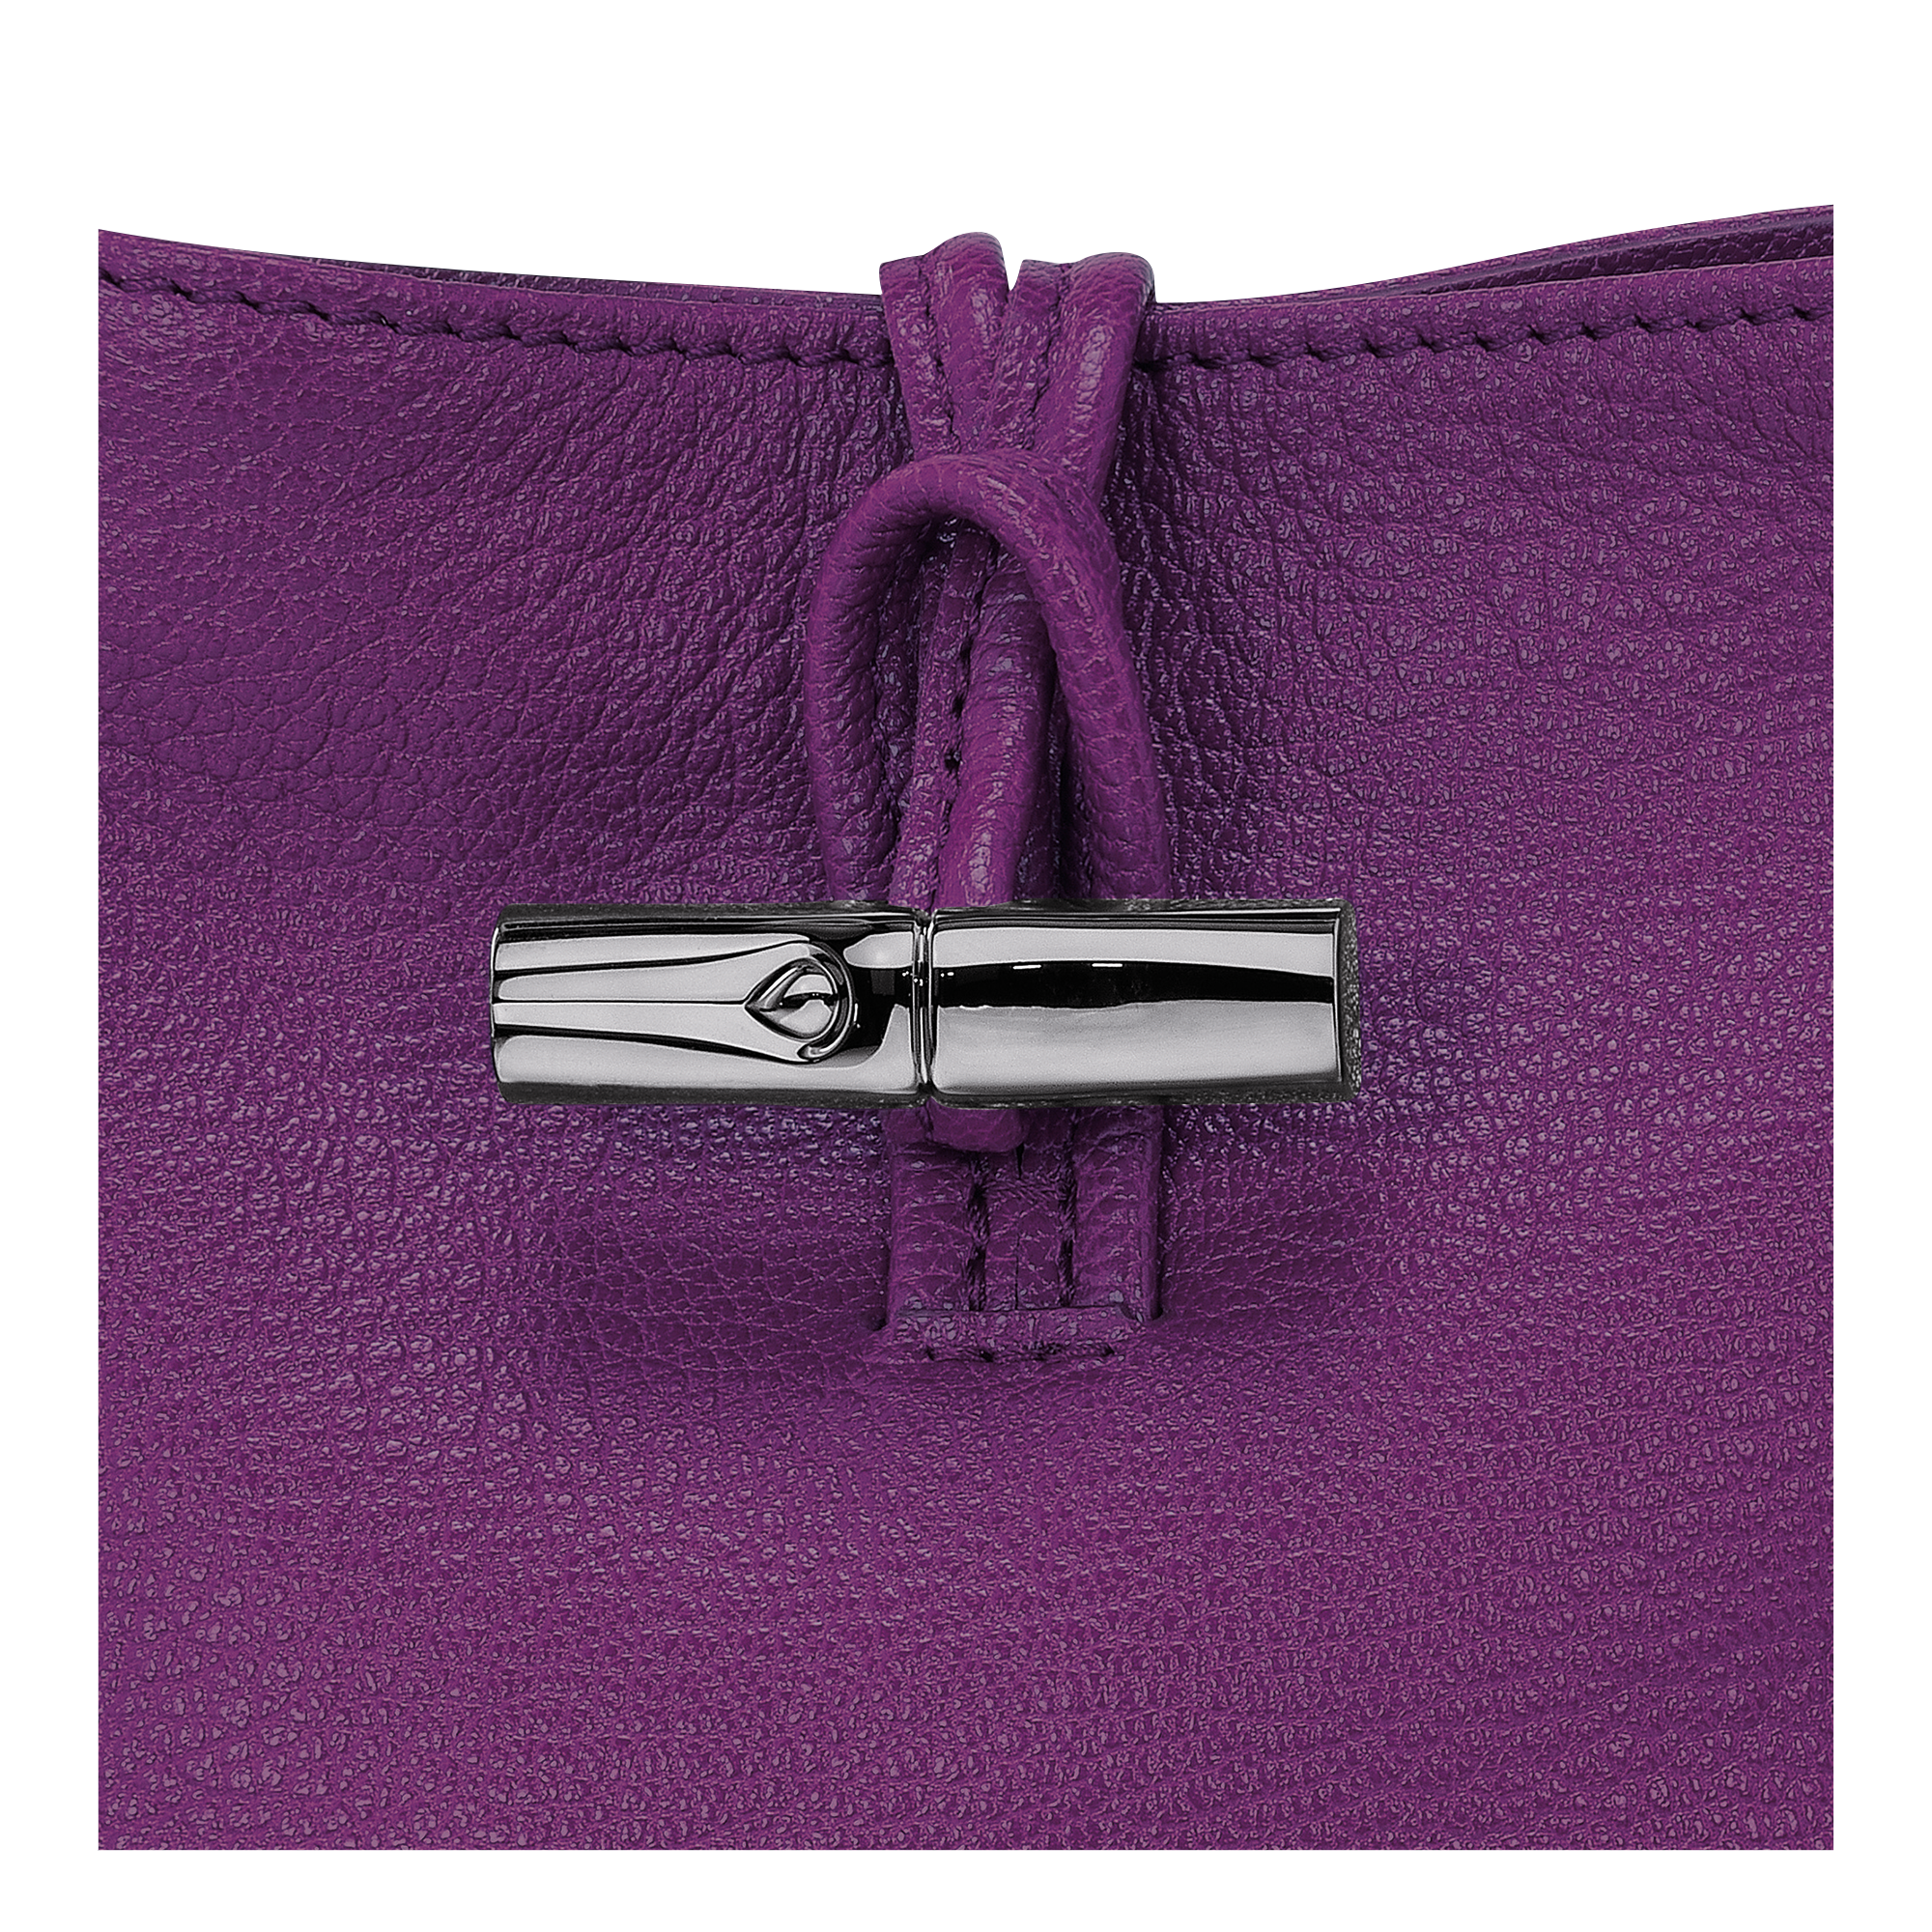 Roseau 系列 斜背袋 XS, 紫色